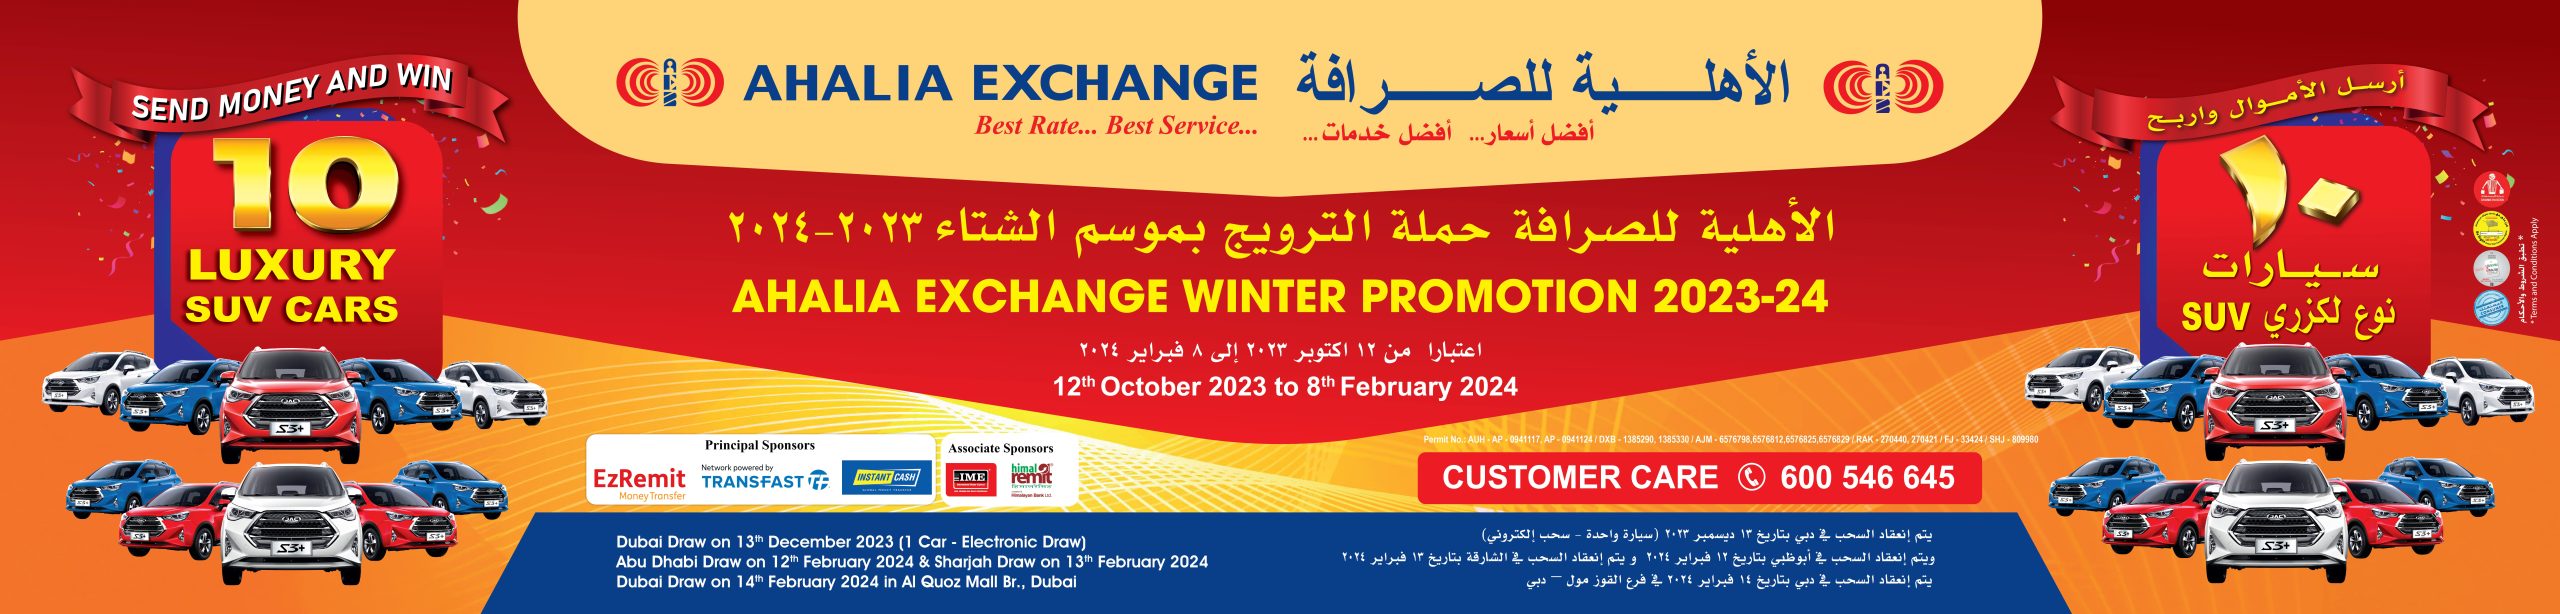 Ahalia Exchange Winter Promotion 2023-24